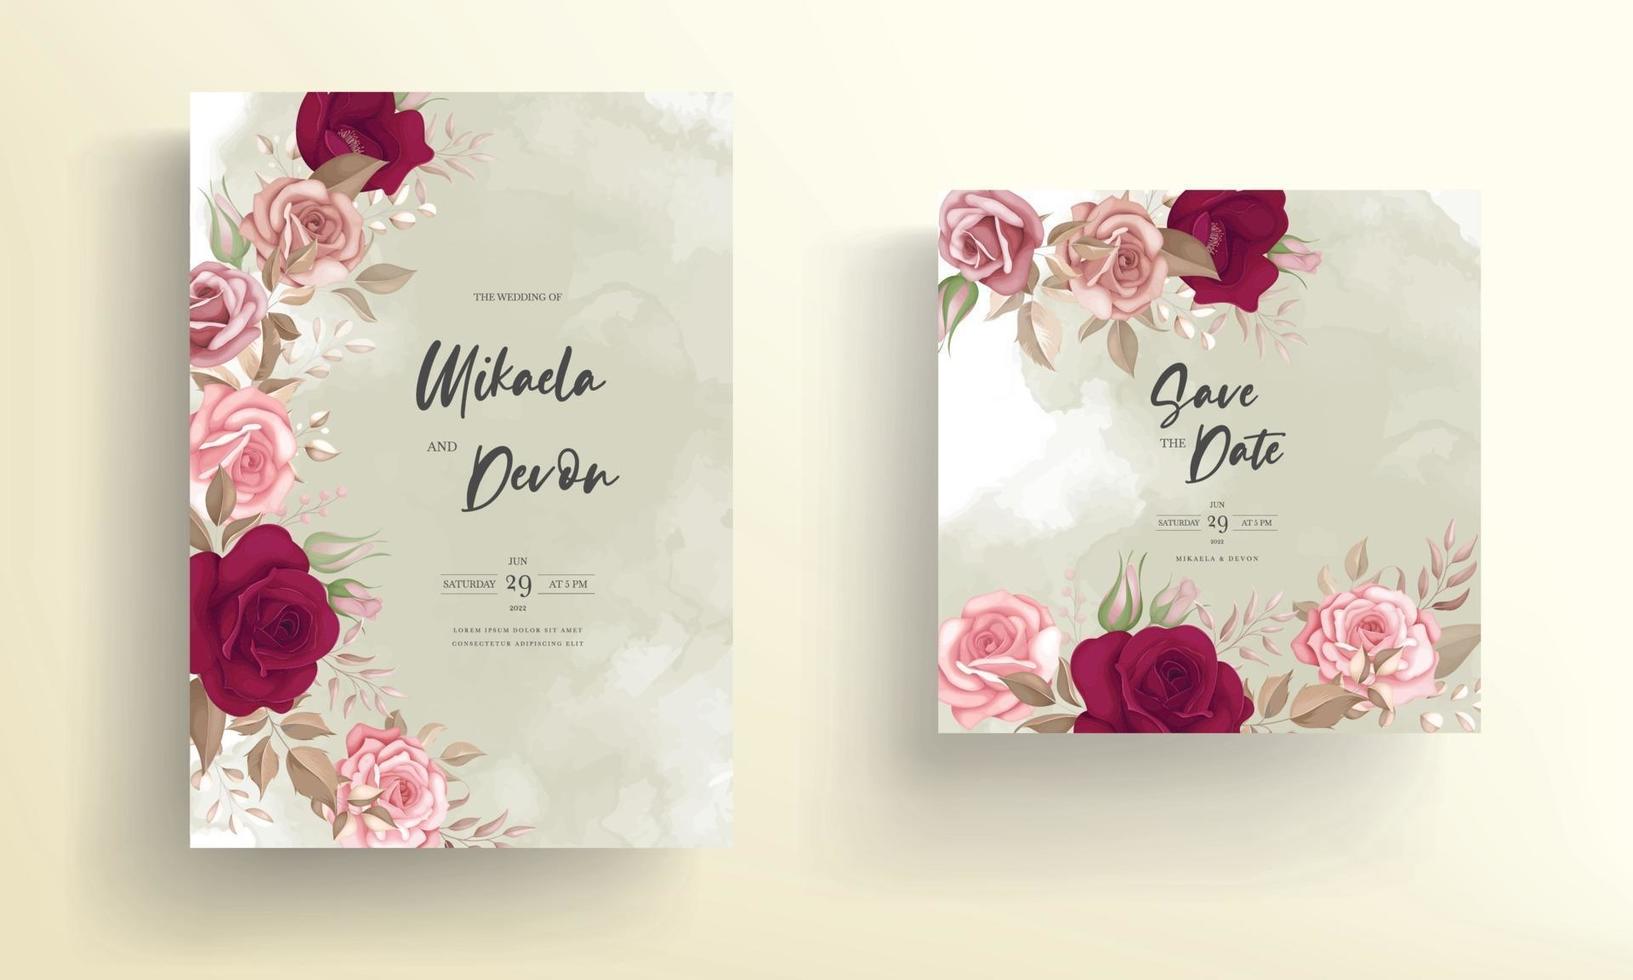 elegant bröllopsinbjudningskort med vackra rödbruna rosor vektor